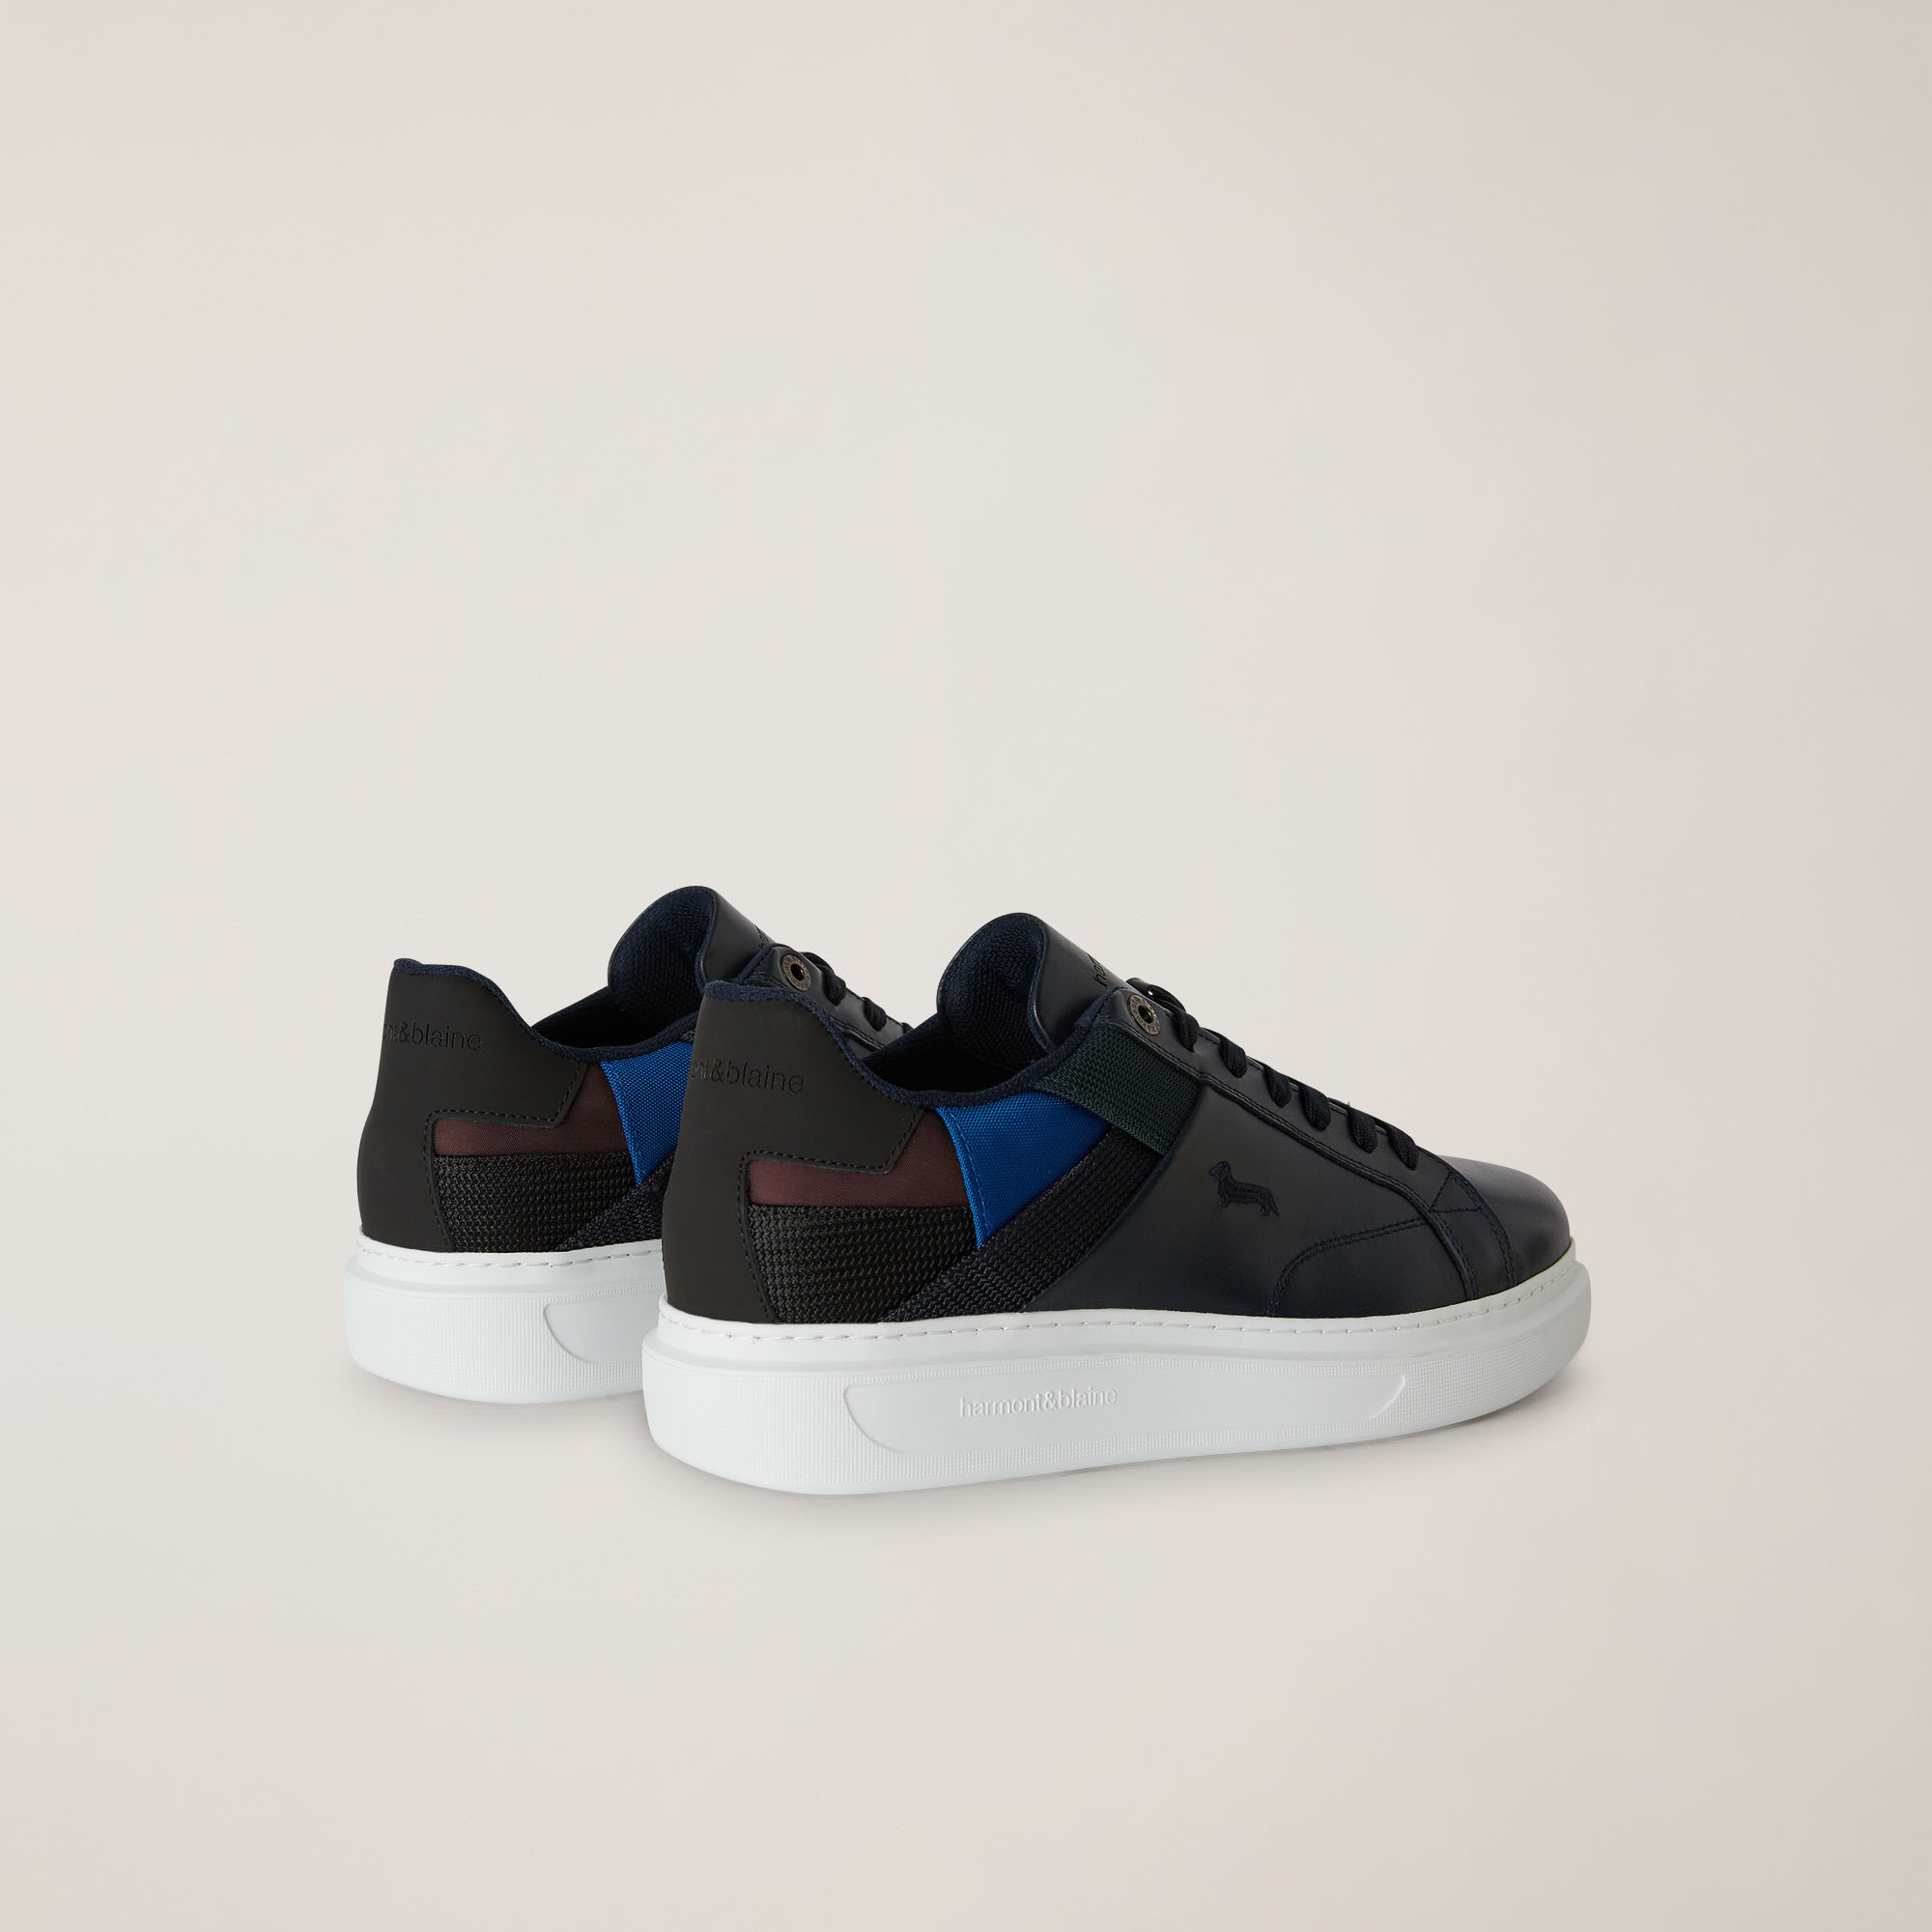 Sneaker In Pelle E Tessuto Con Dettagli A Contrasto, Blu Scuro, large